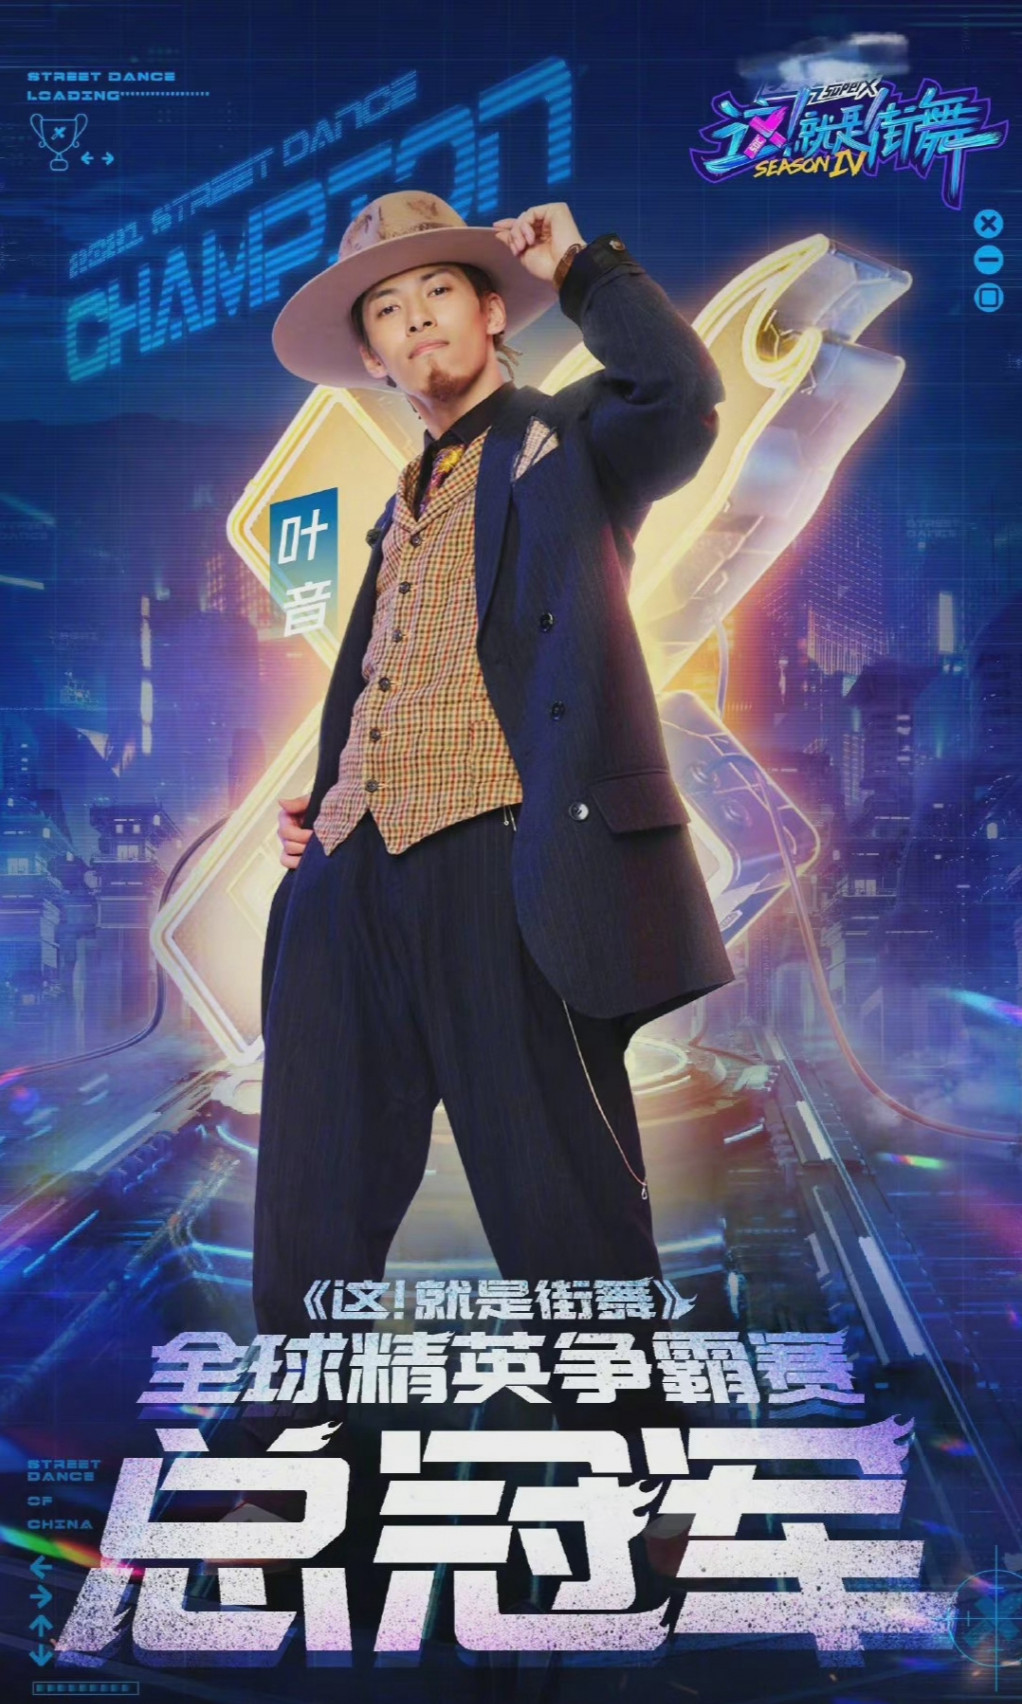 'Street Dance of China' mùa 4 kết thúc: Vương Nhất Bác 2 lần liên tiếp thành công dẫn đội tiến đến ngôi vị quán quân